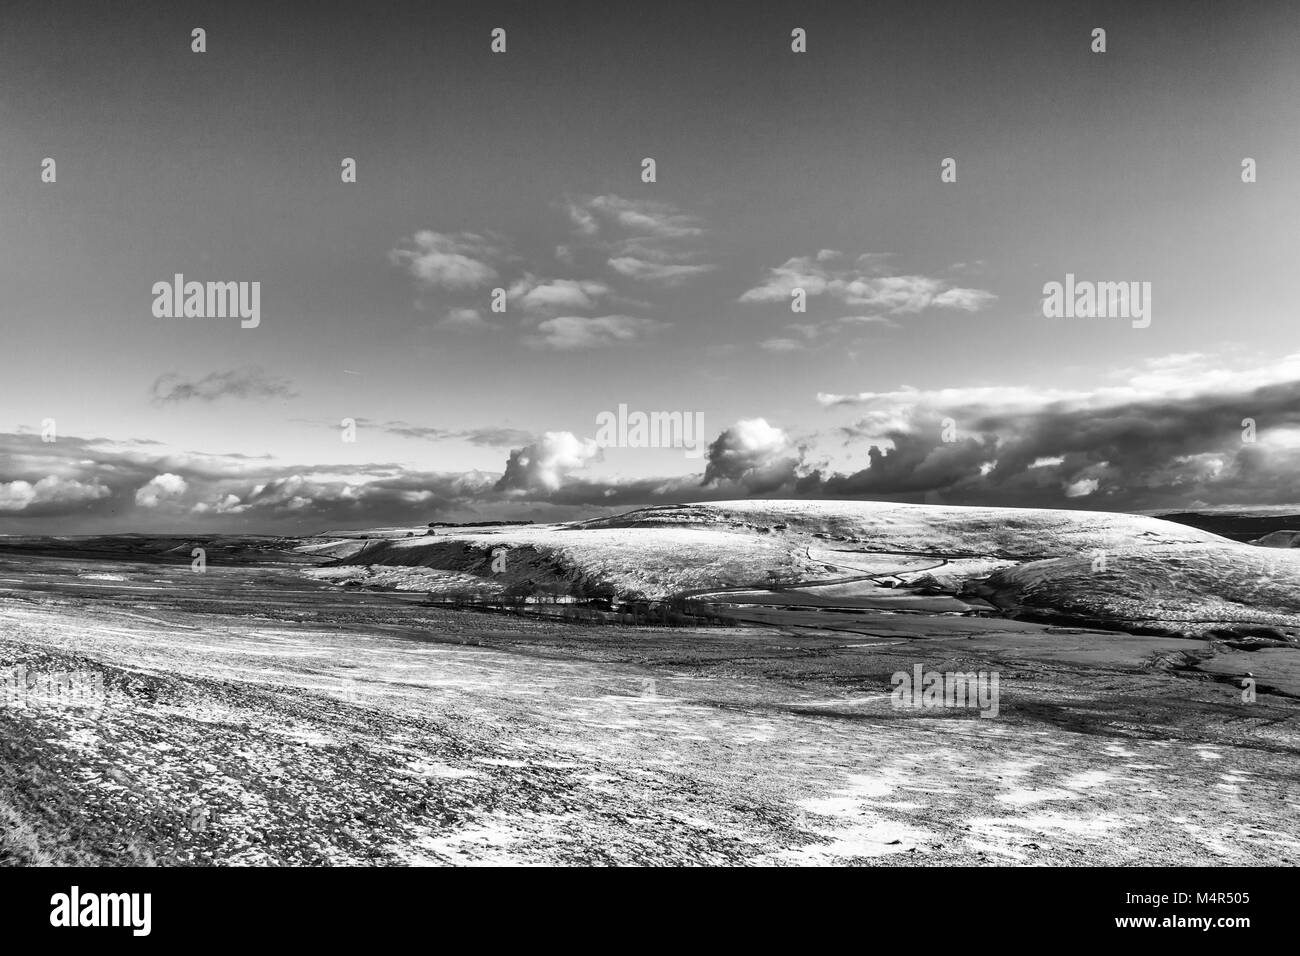 Las imágenes en blanco y negro de la nieve en las colinas en Peak District National Park, Inglaterra Foto de stock